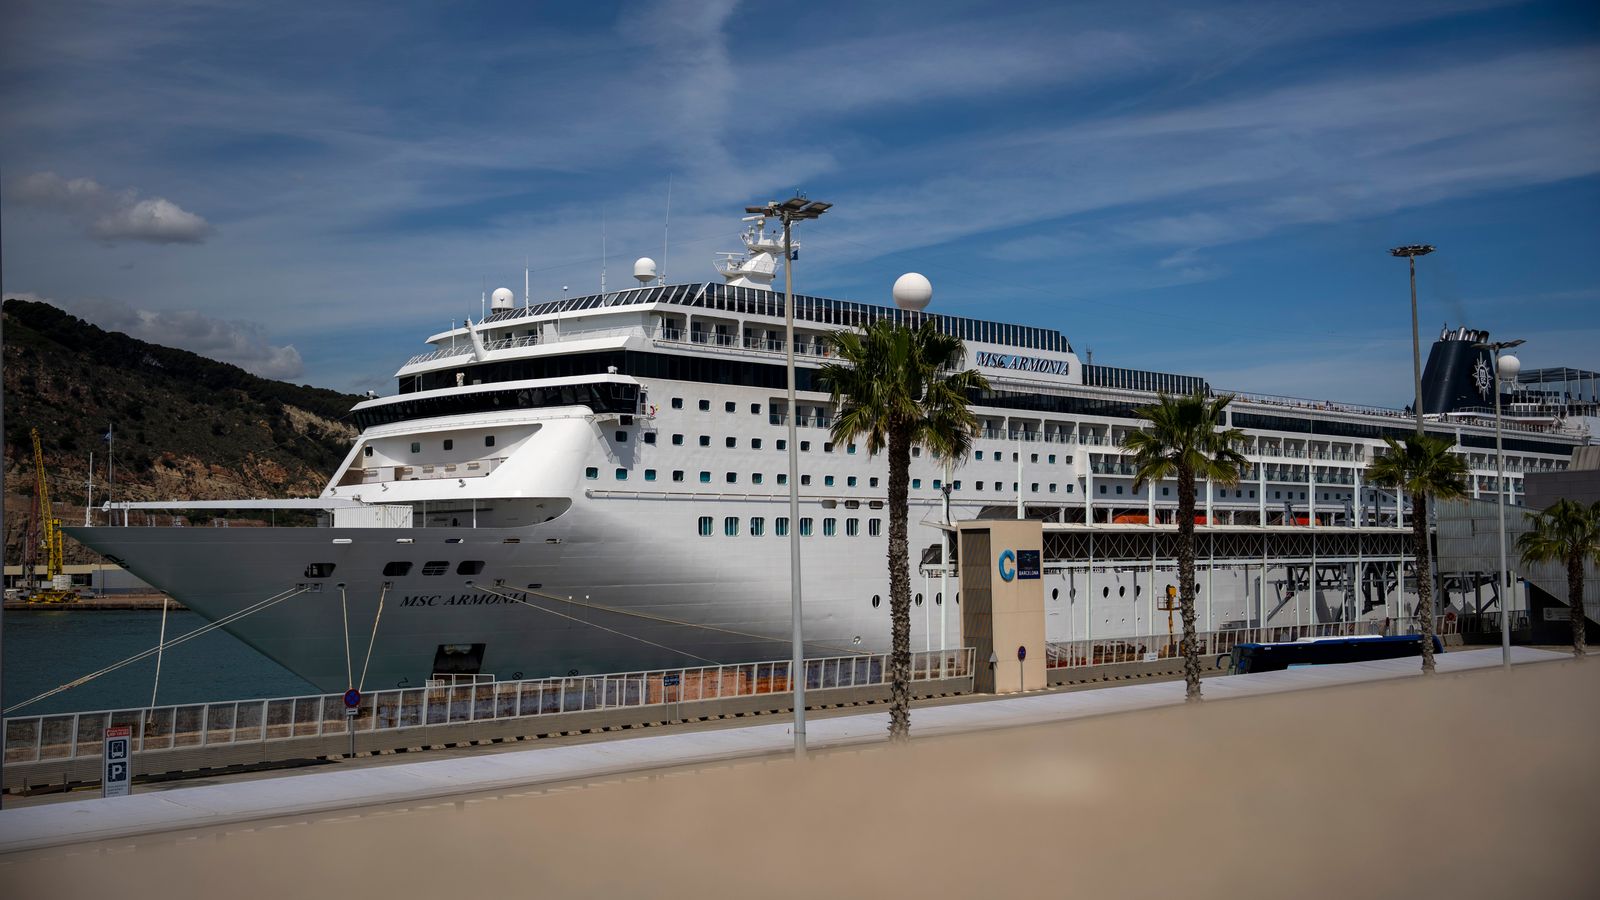 Круиз, превозващ 1500 пътници, блокиран в пристанището на Барселона заради спор за боливийска виза